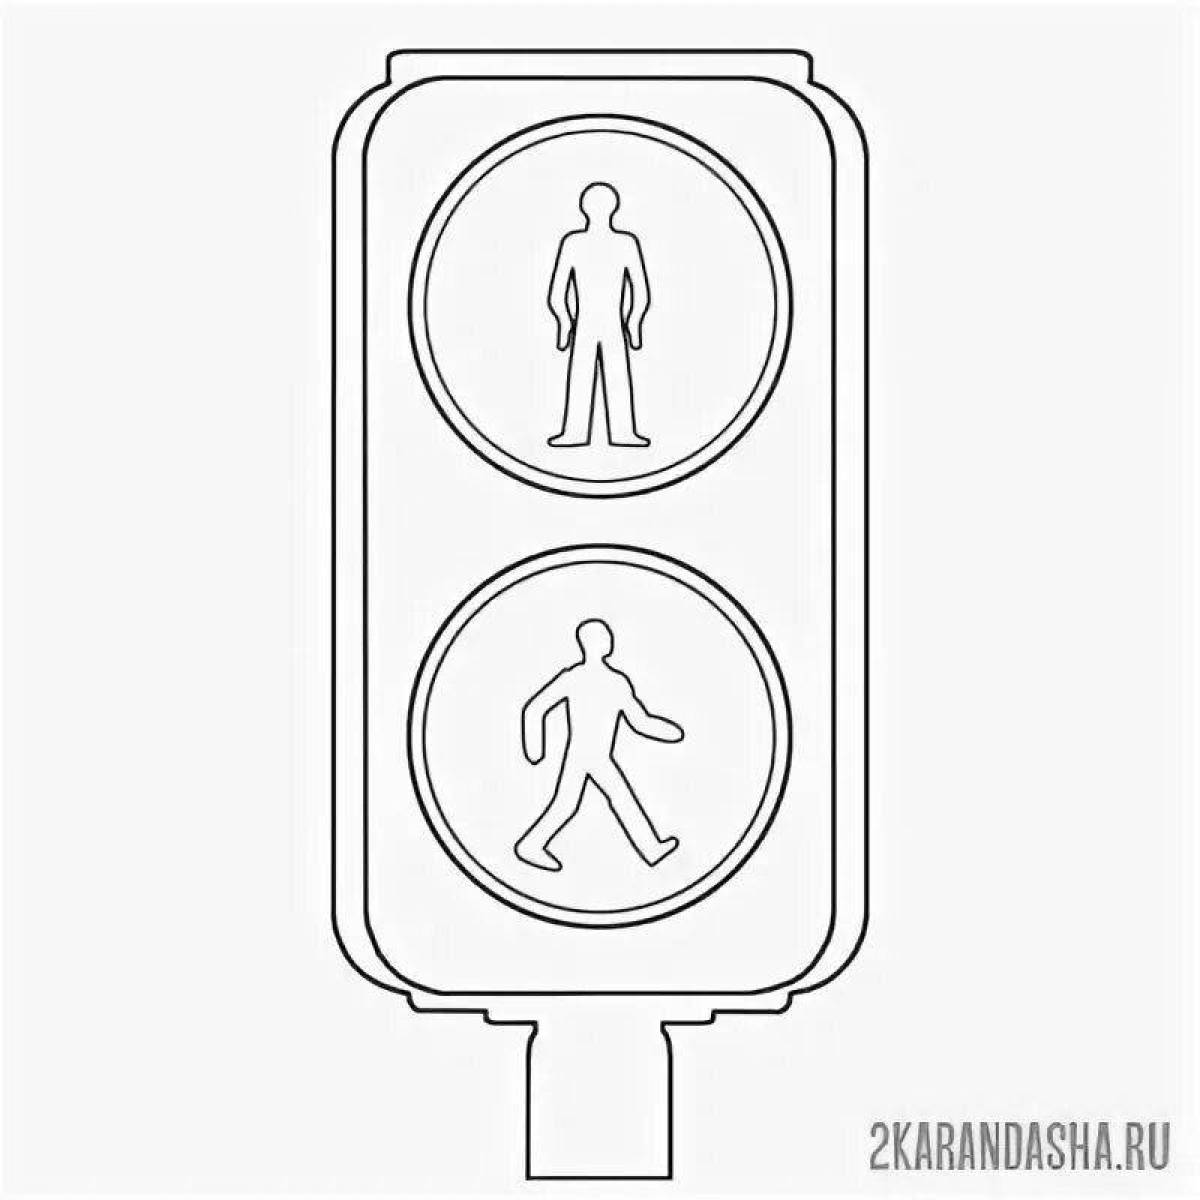 Pedestrian traffic light #4